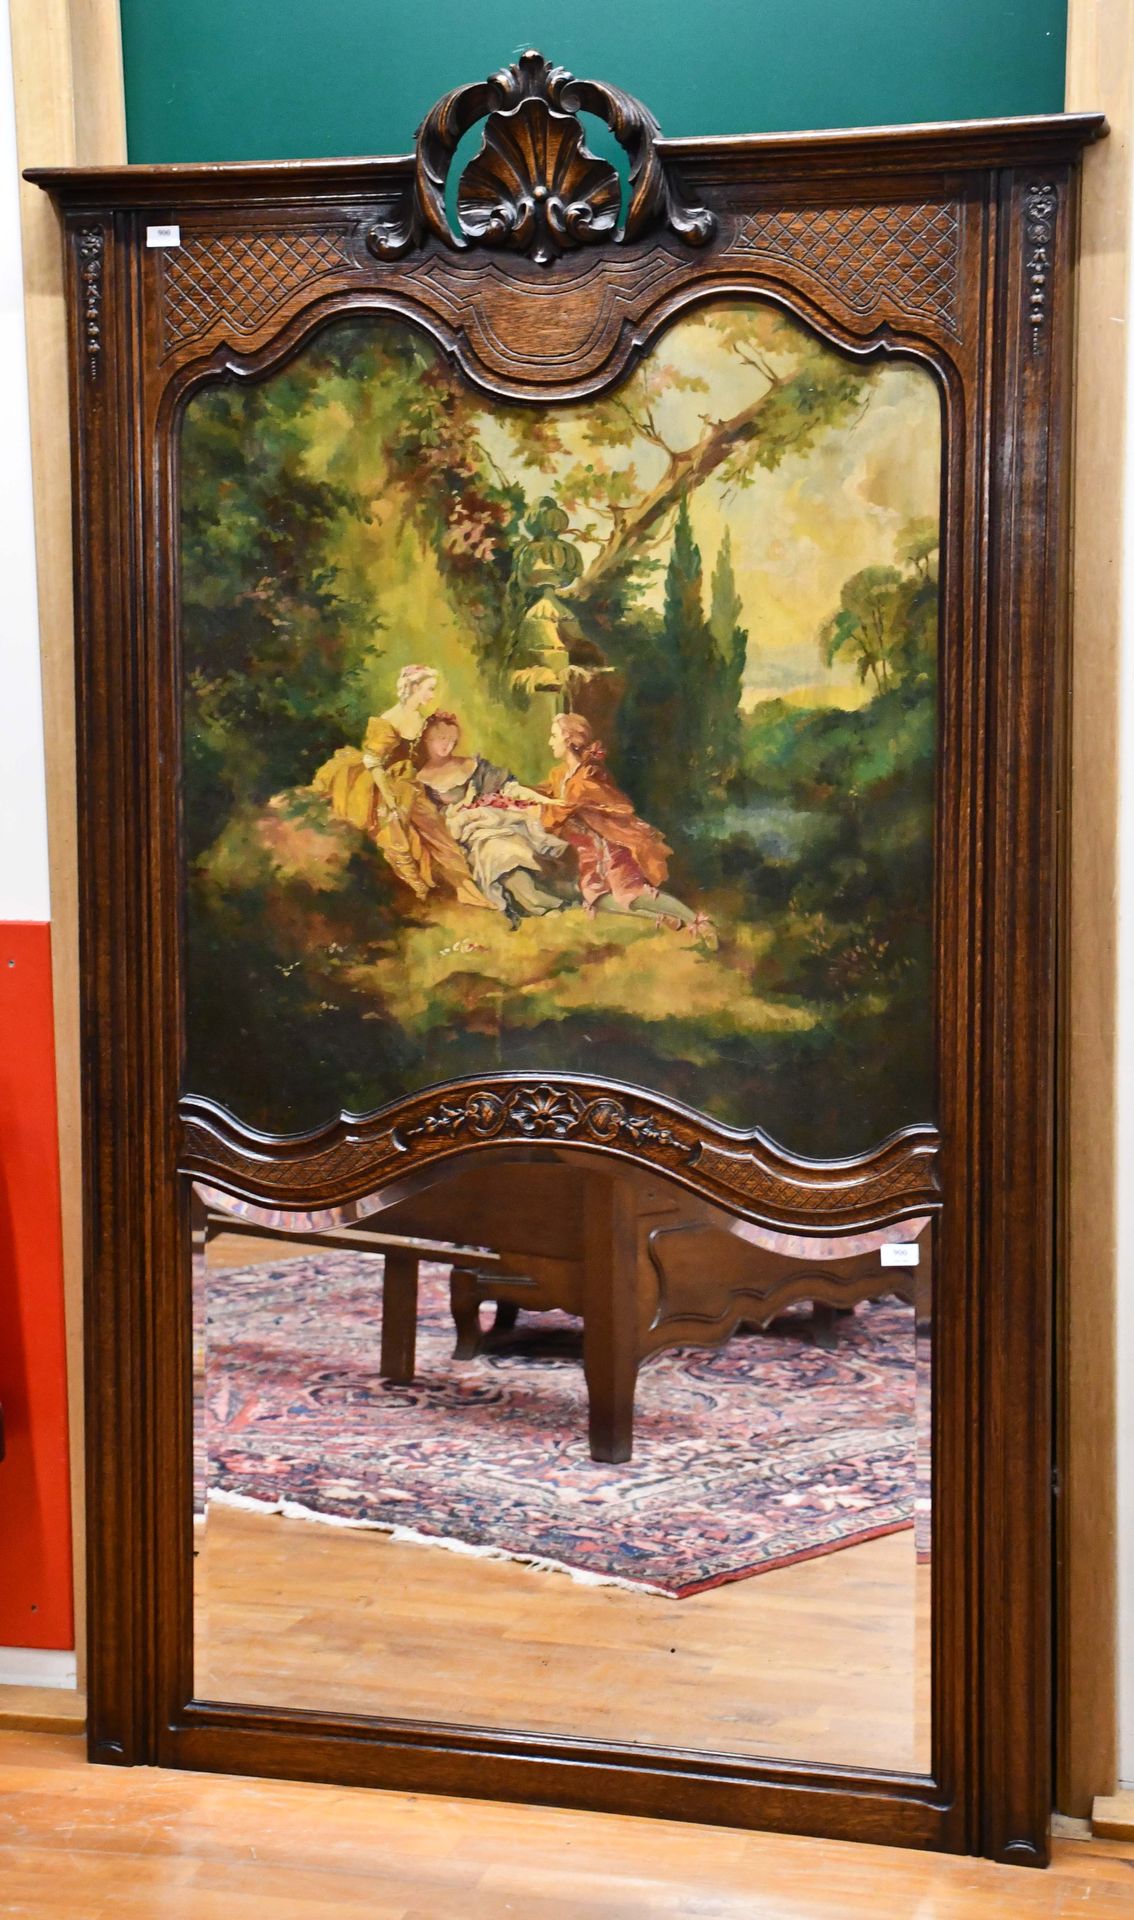 Null 来自列日的摄政风格的橡木雕刻壁炉，装饰有一幅油画，底部有一面斜面镜。

身高：195厘米。